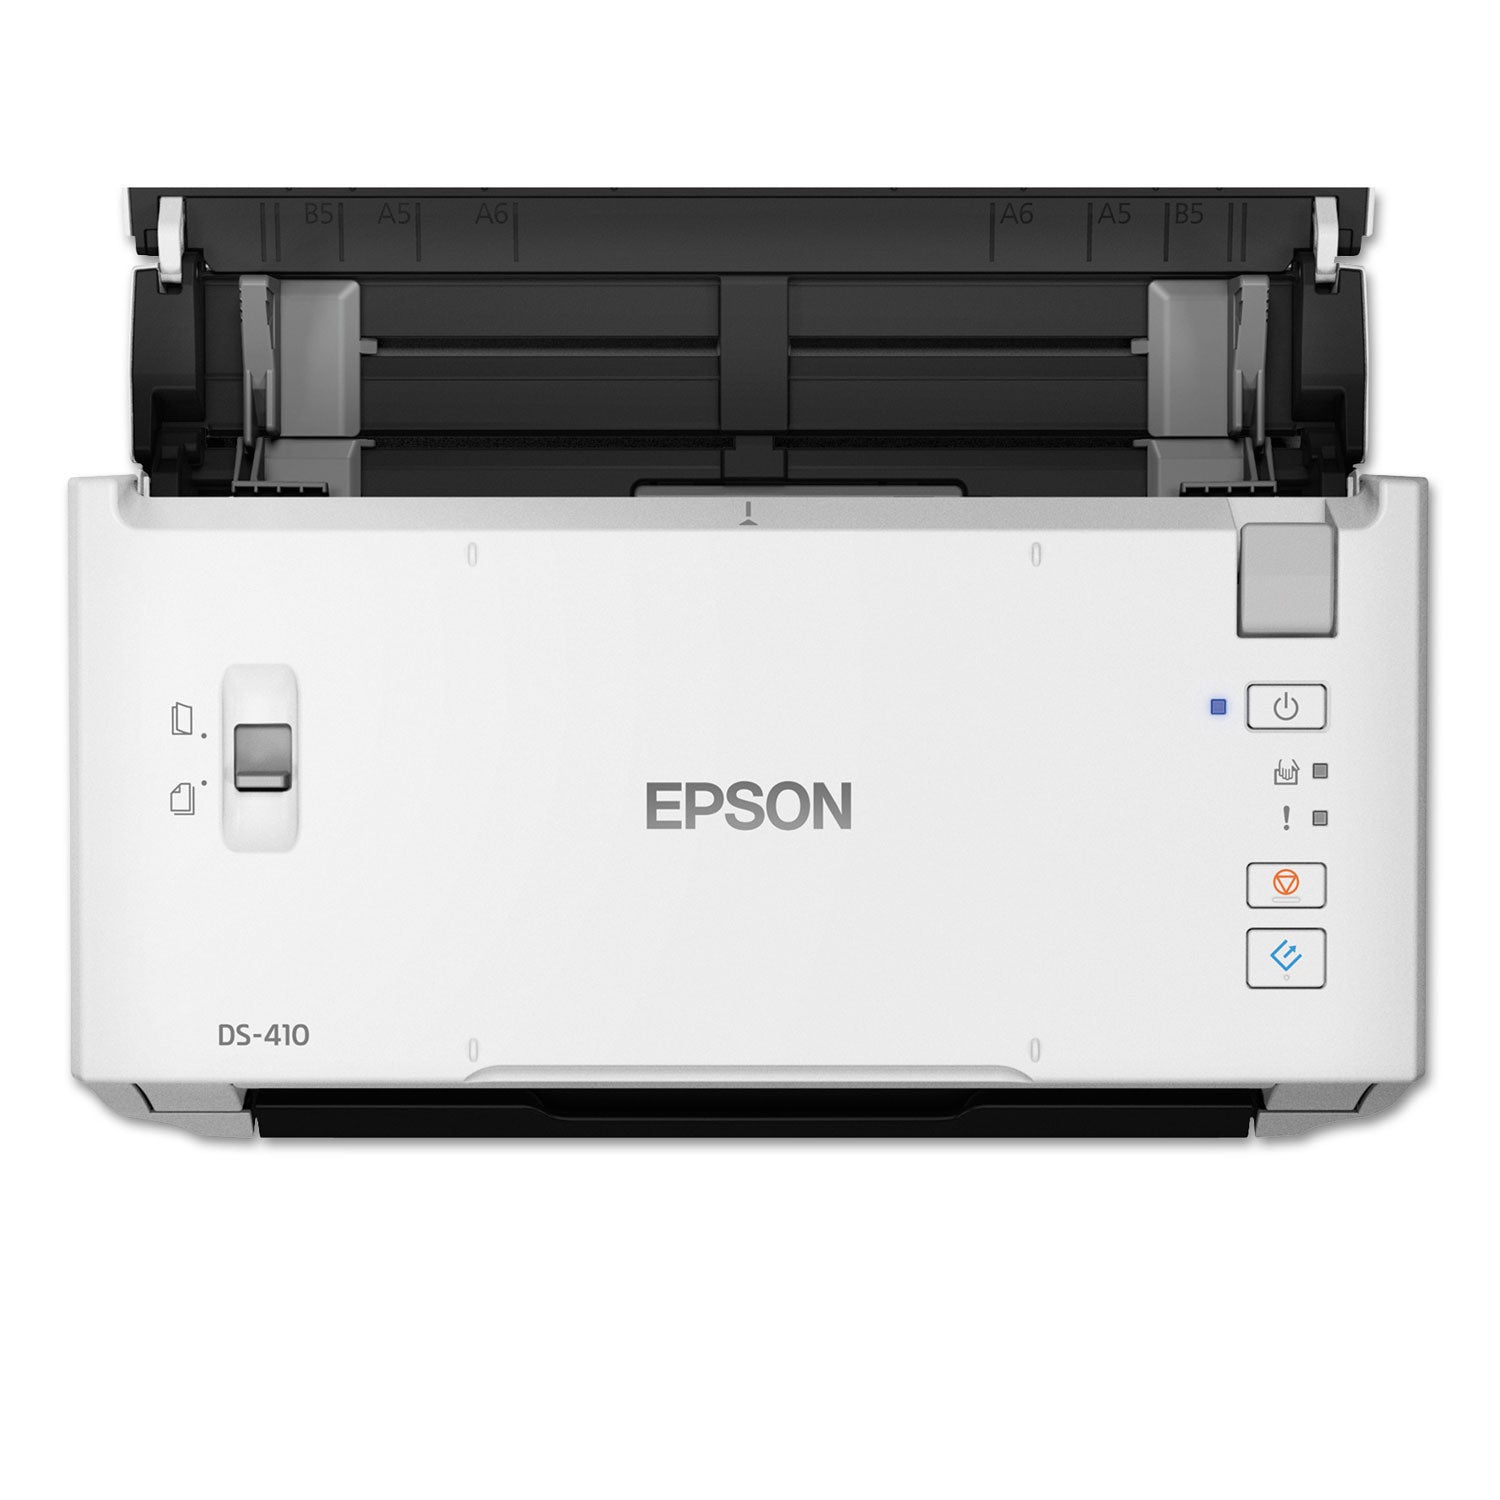 ds-410-document-scanner-600-dpi-optical-resolution-50-sheet-duplex-auto-document-feeder_epsb11b249201 - 2